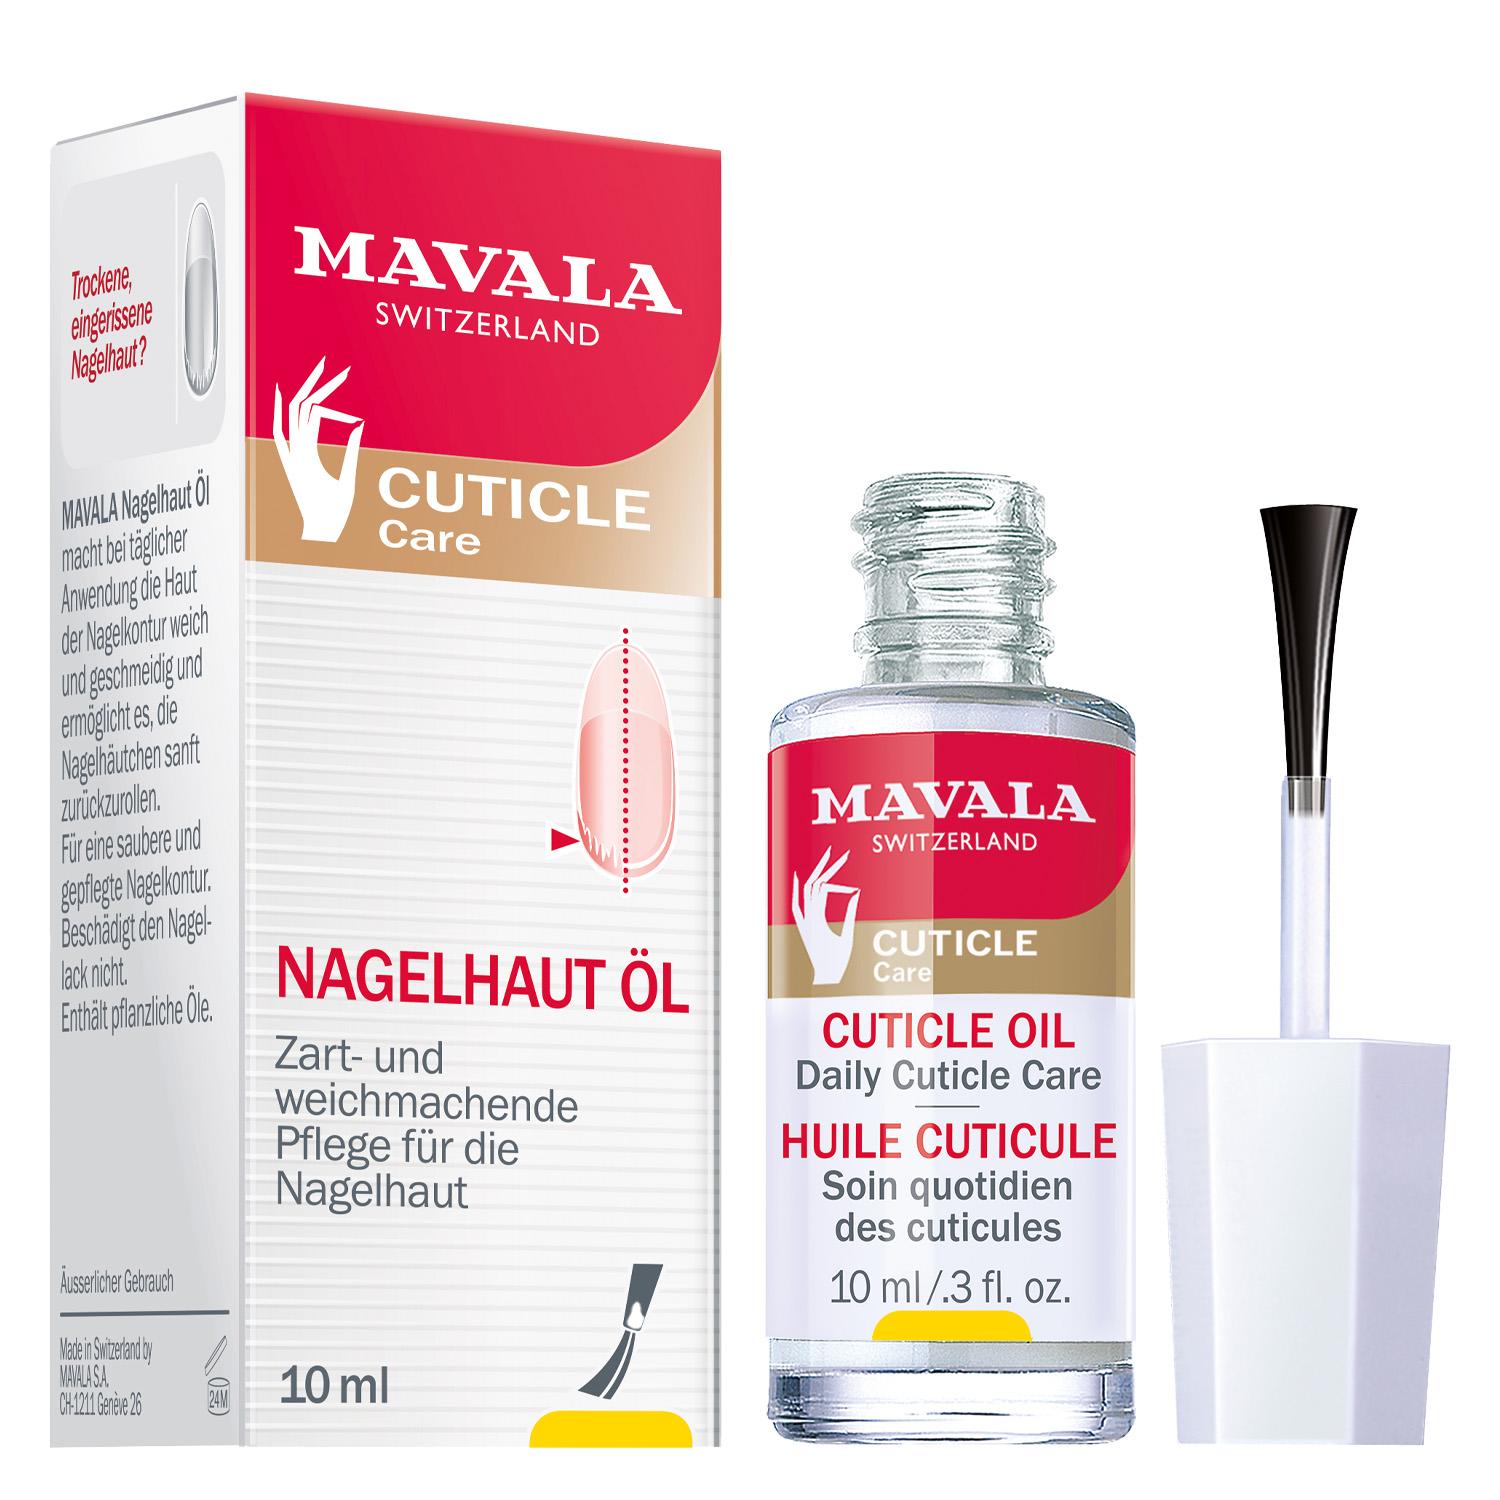 MAVALA Care - Cuticle Oil